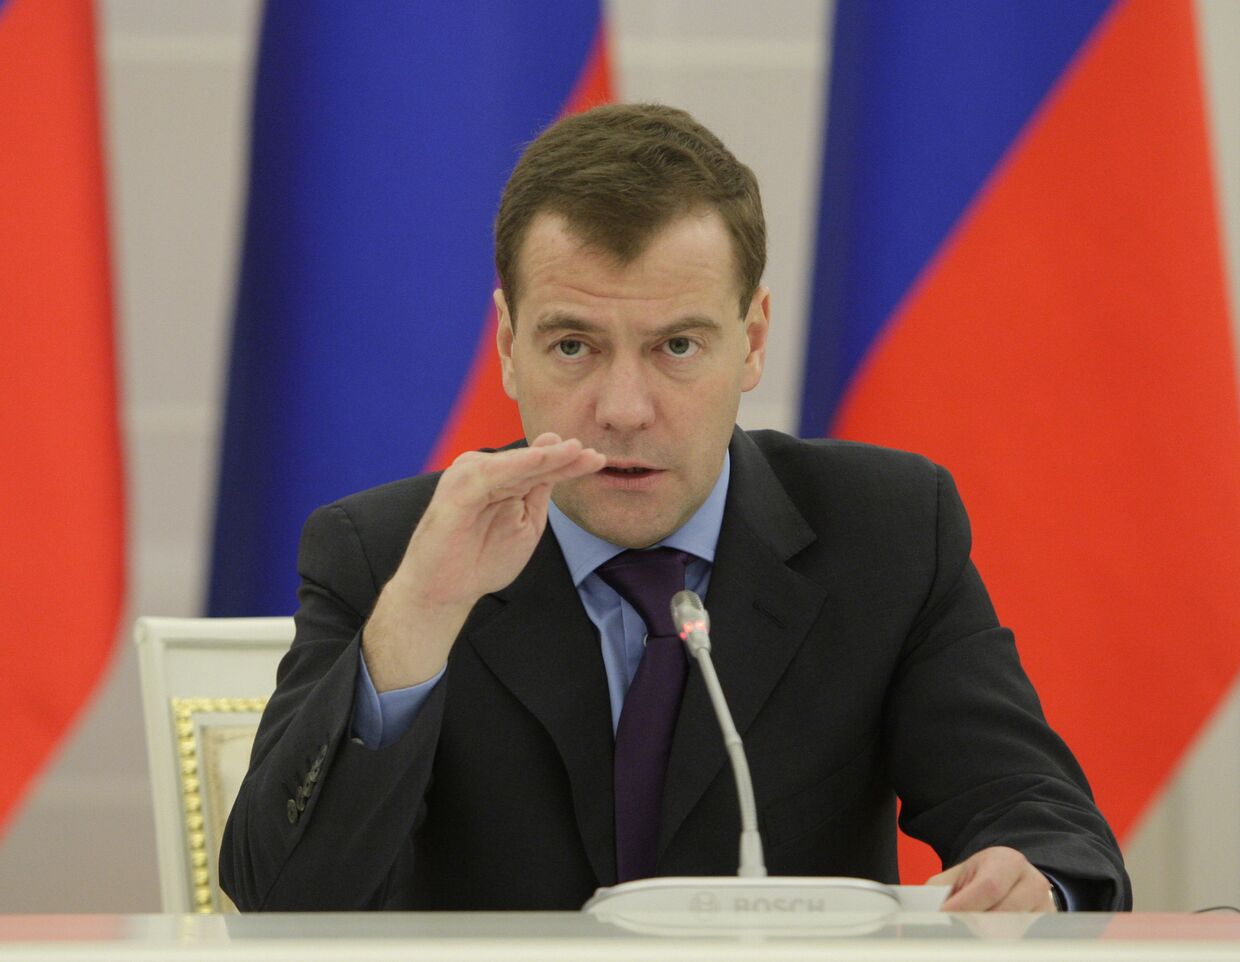 Президент РФ Д.Медведев встретился с руководителями ведущих венчурных фондов США